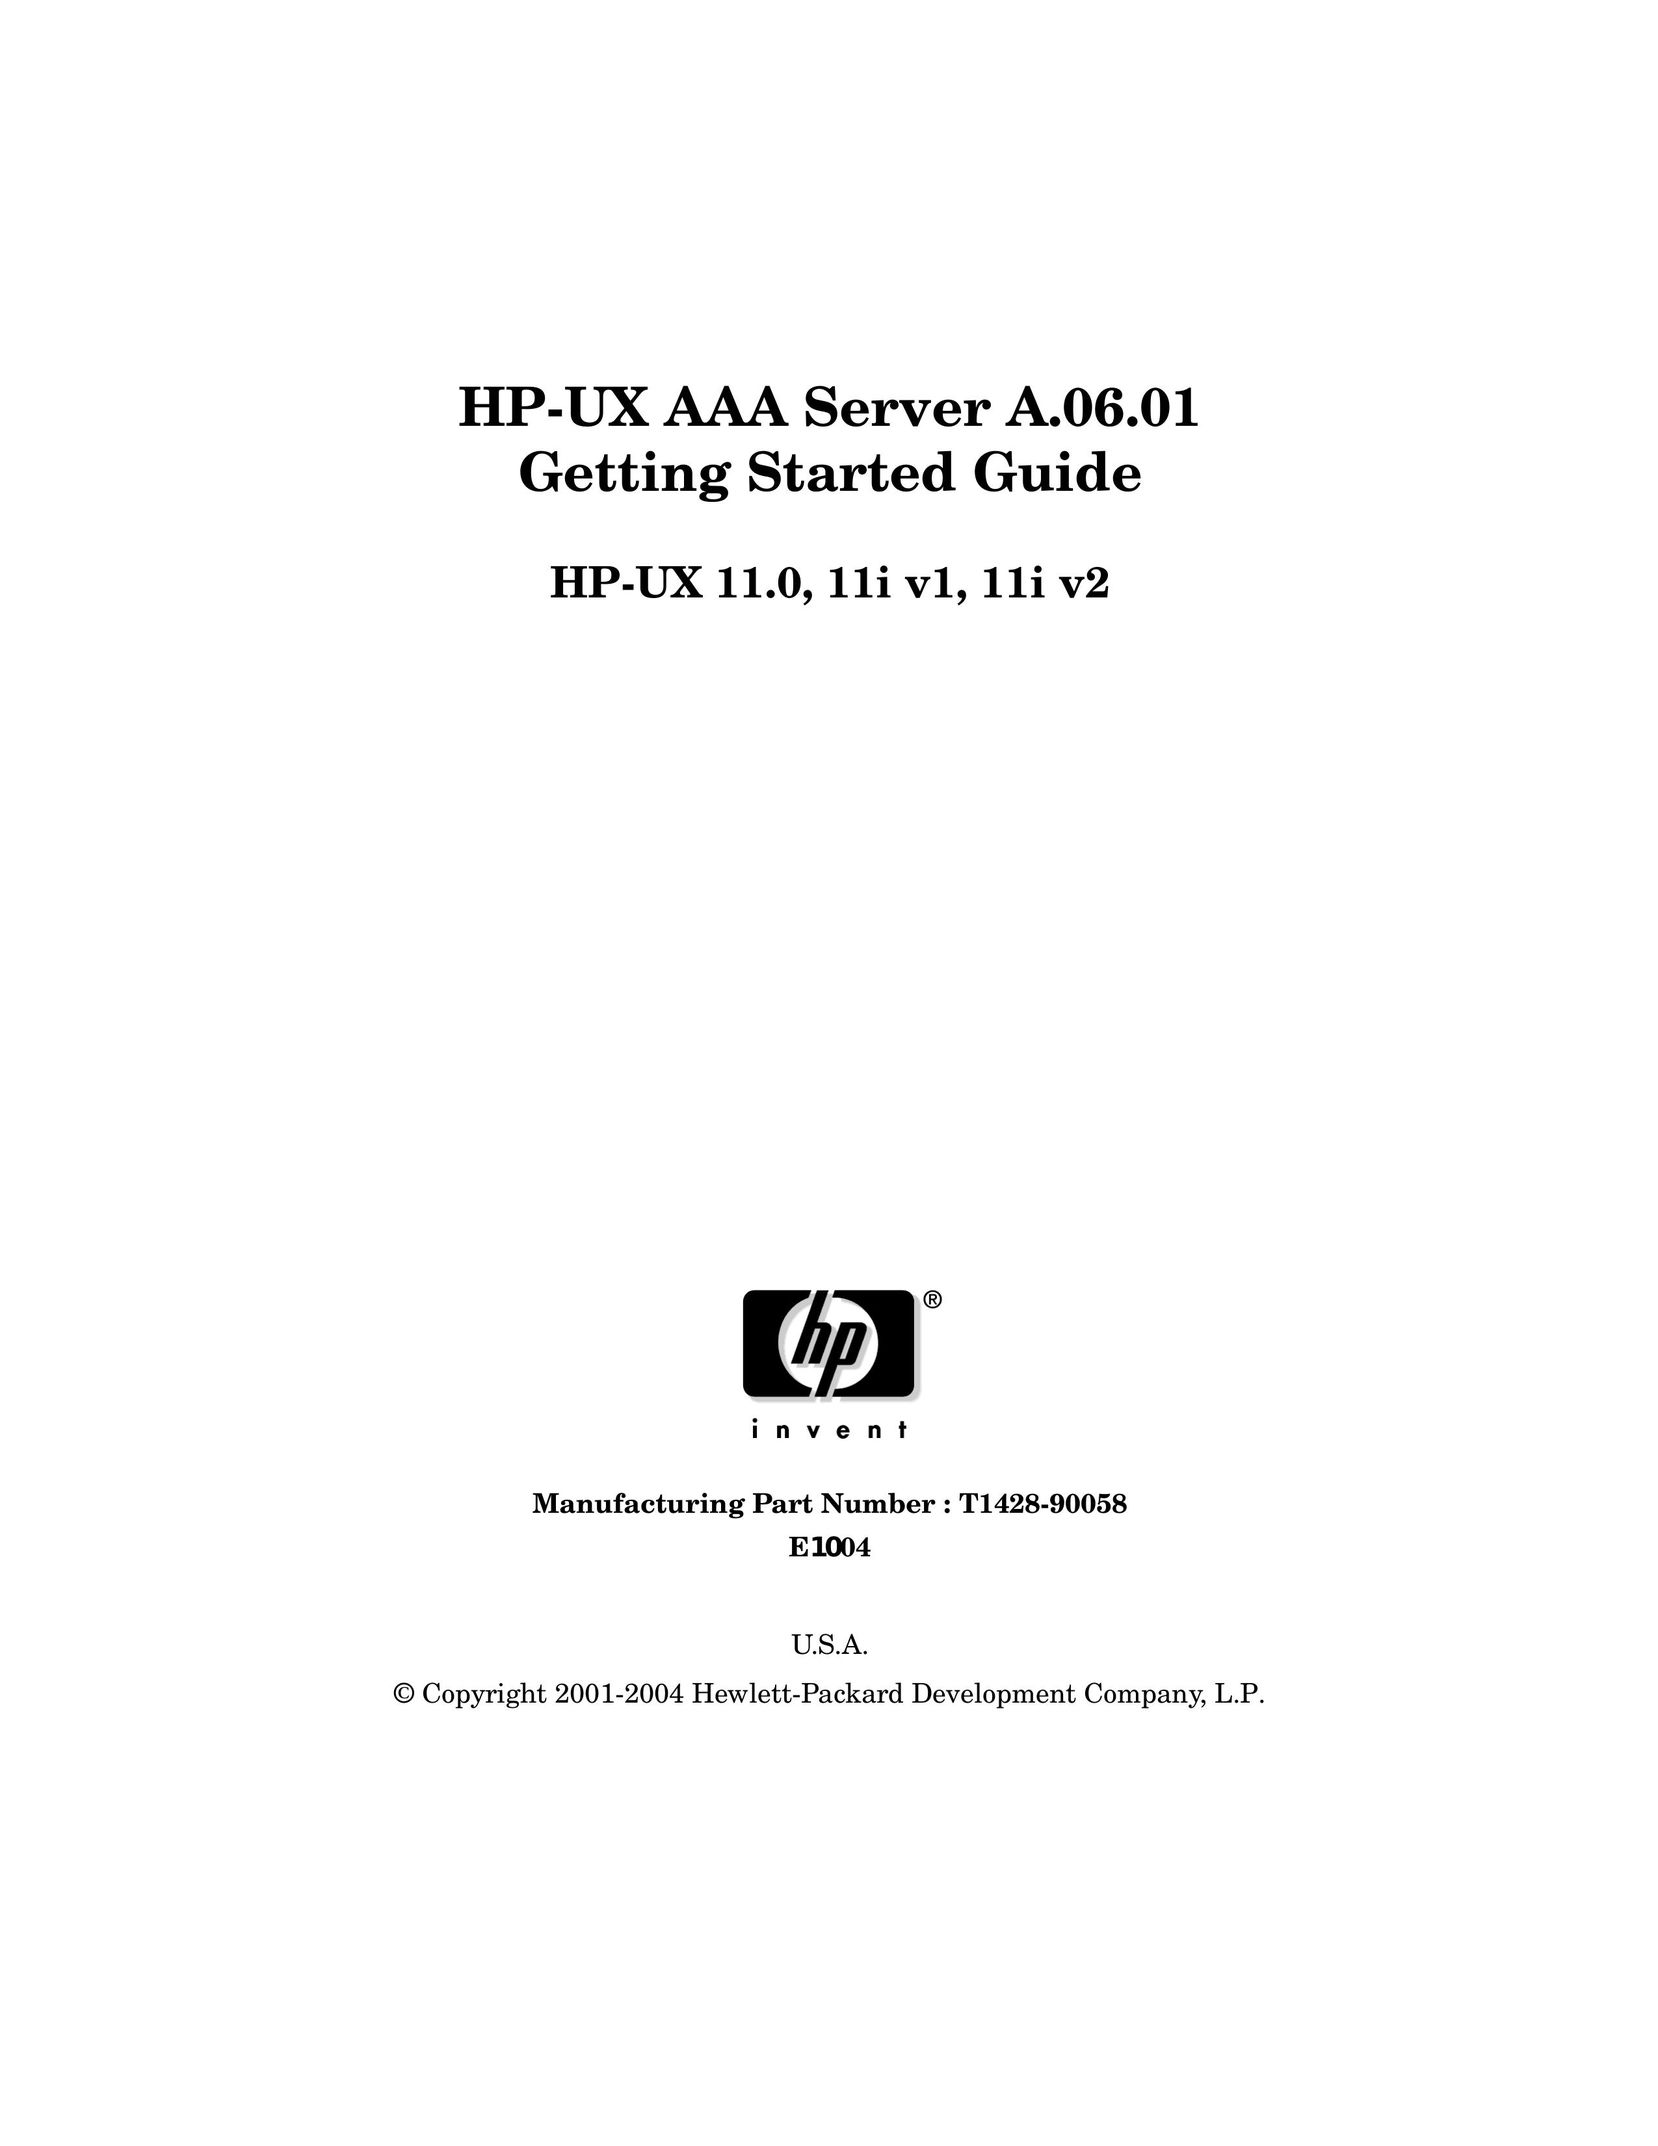 HP (Hewlett-Packard) 11I V1 Server User Manual